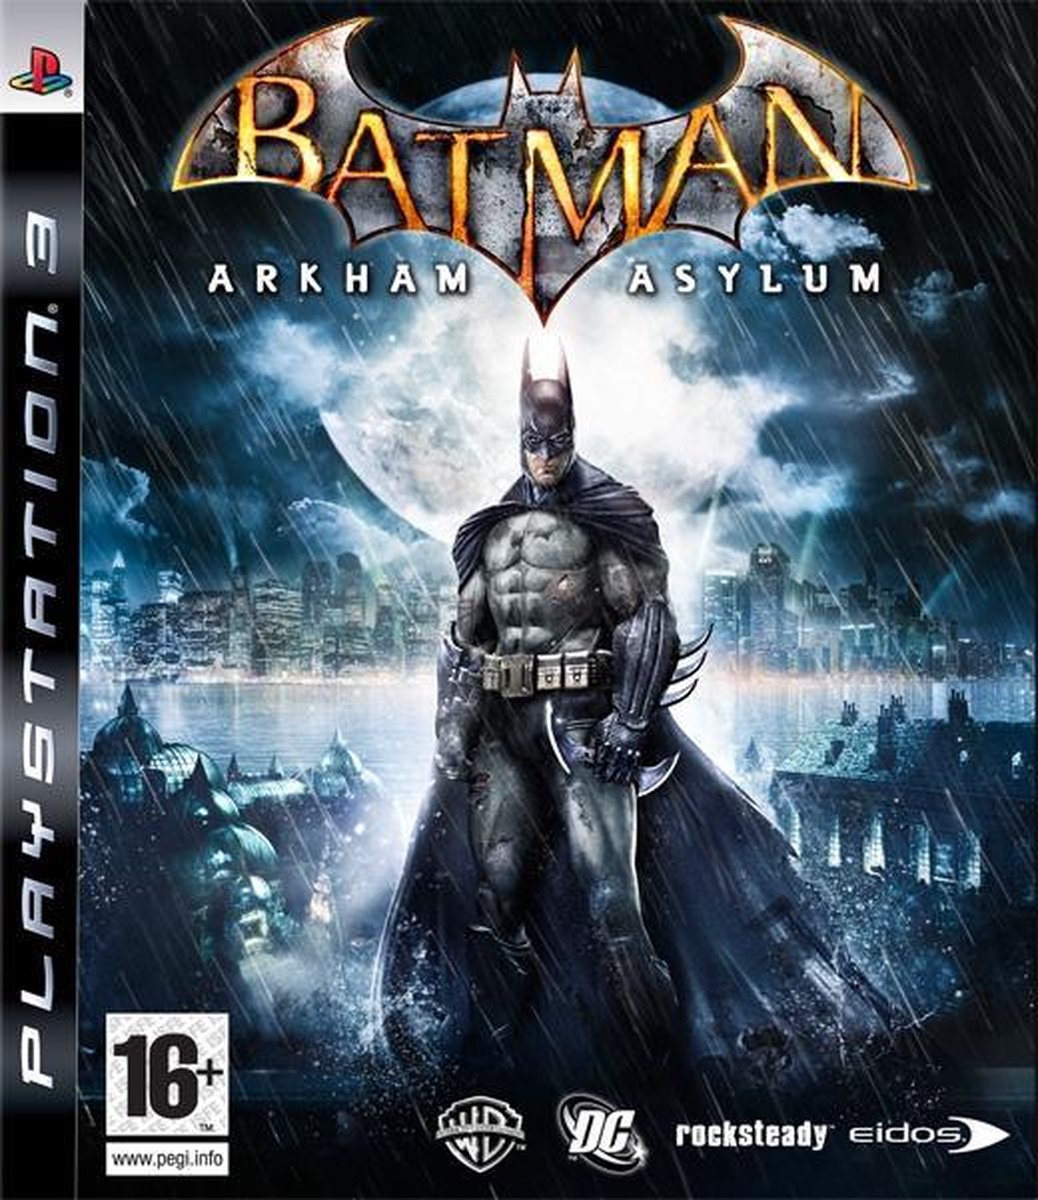 Batman: Arkham Asylum /PS3 - Electronic Arts